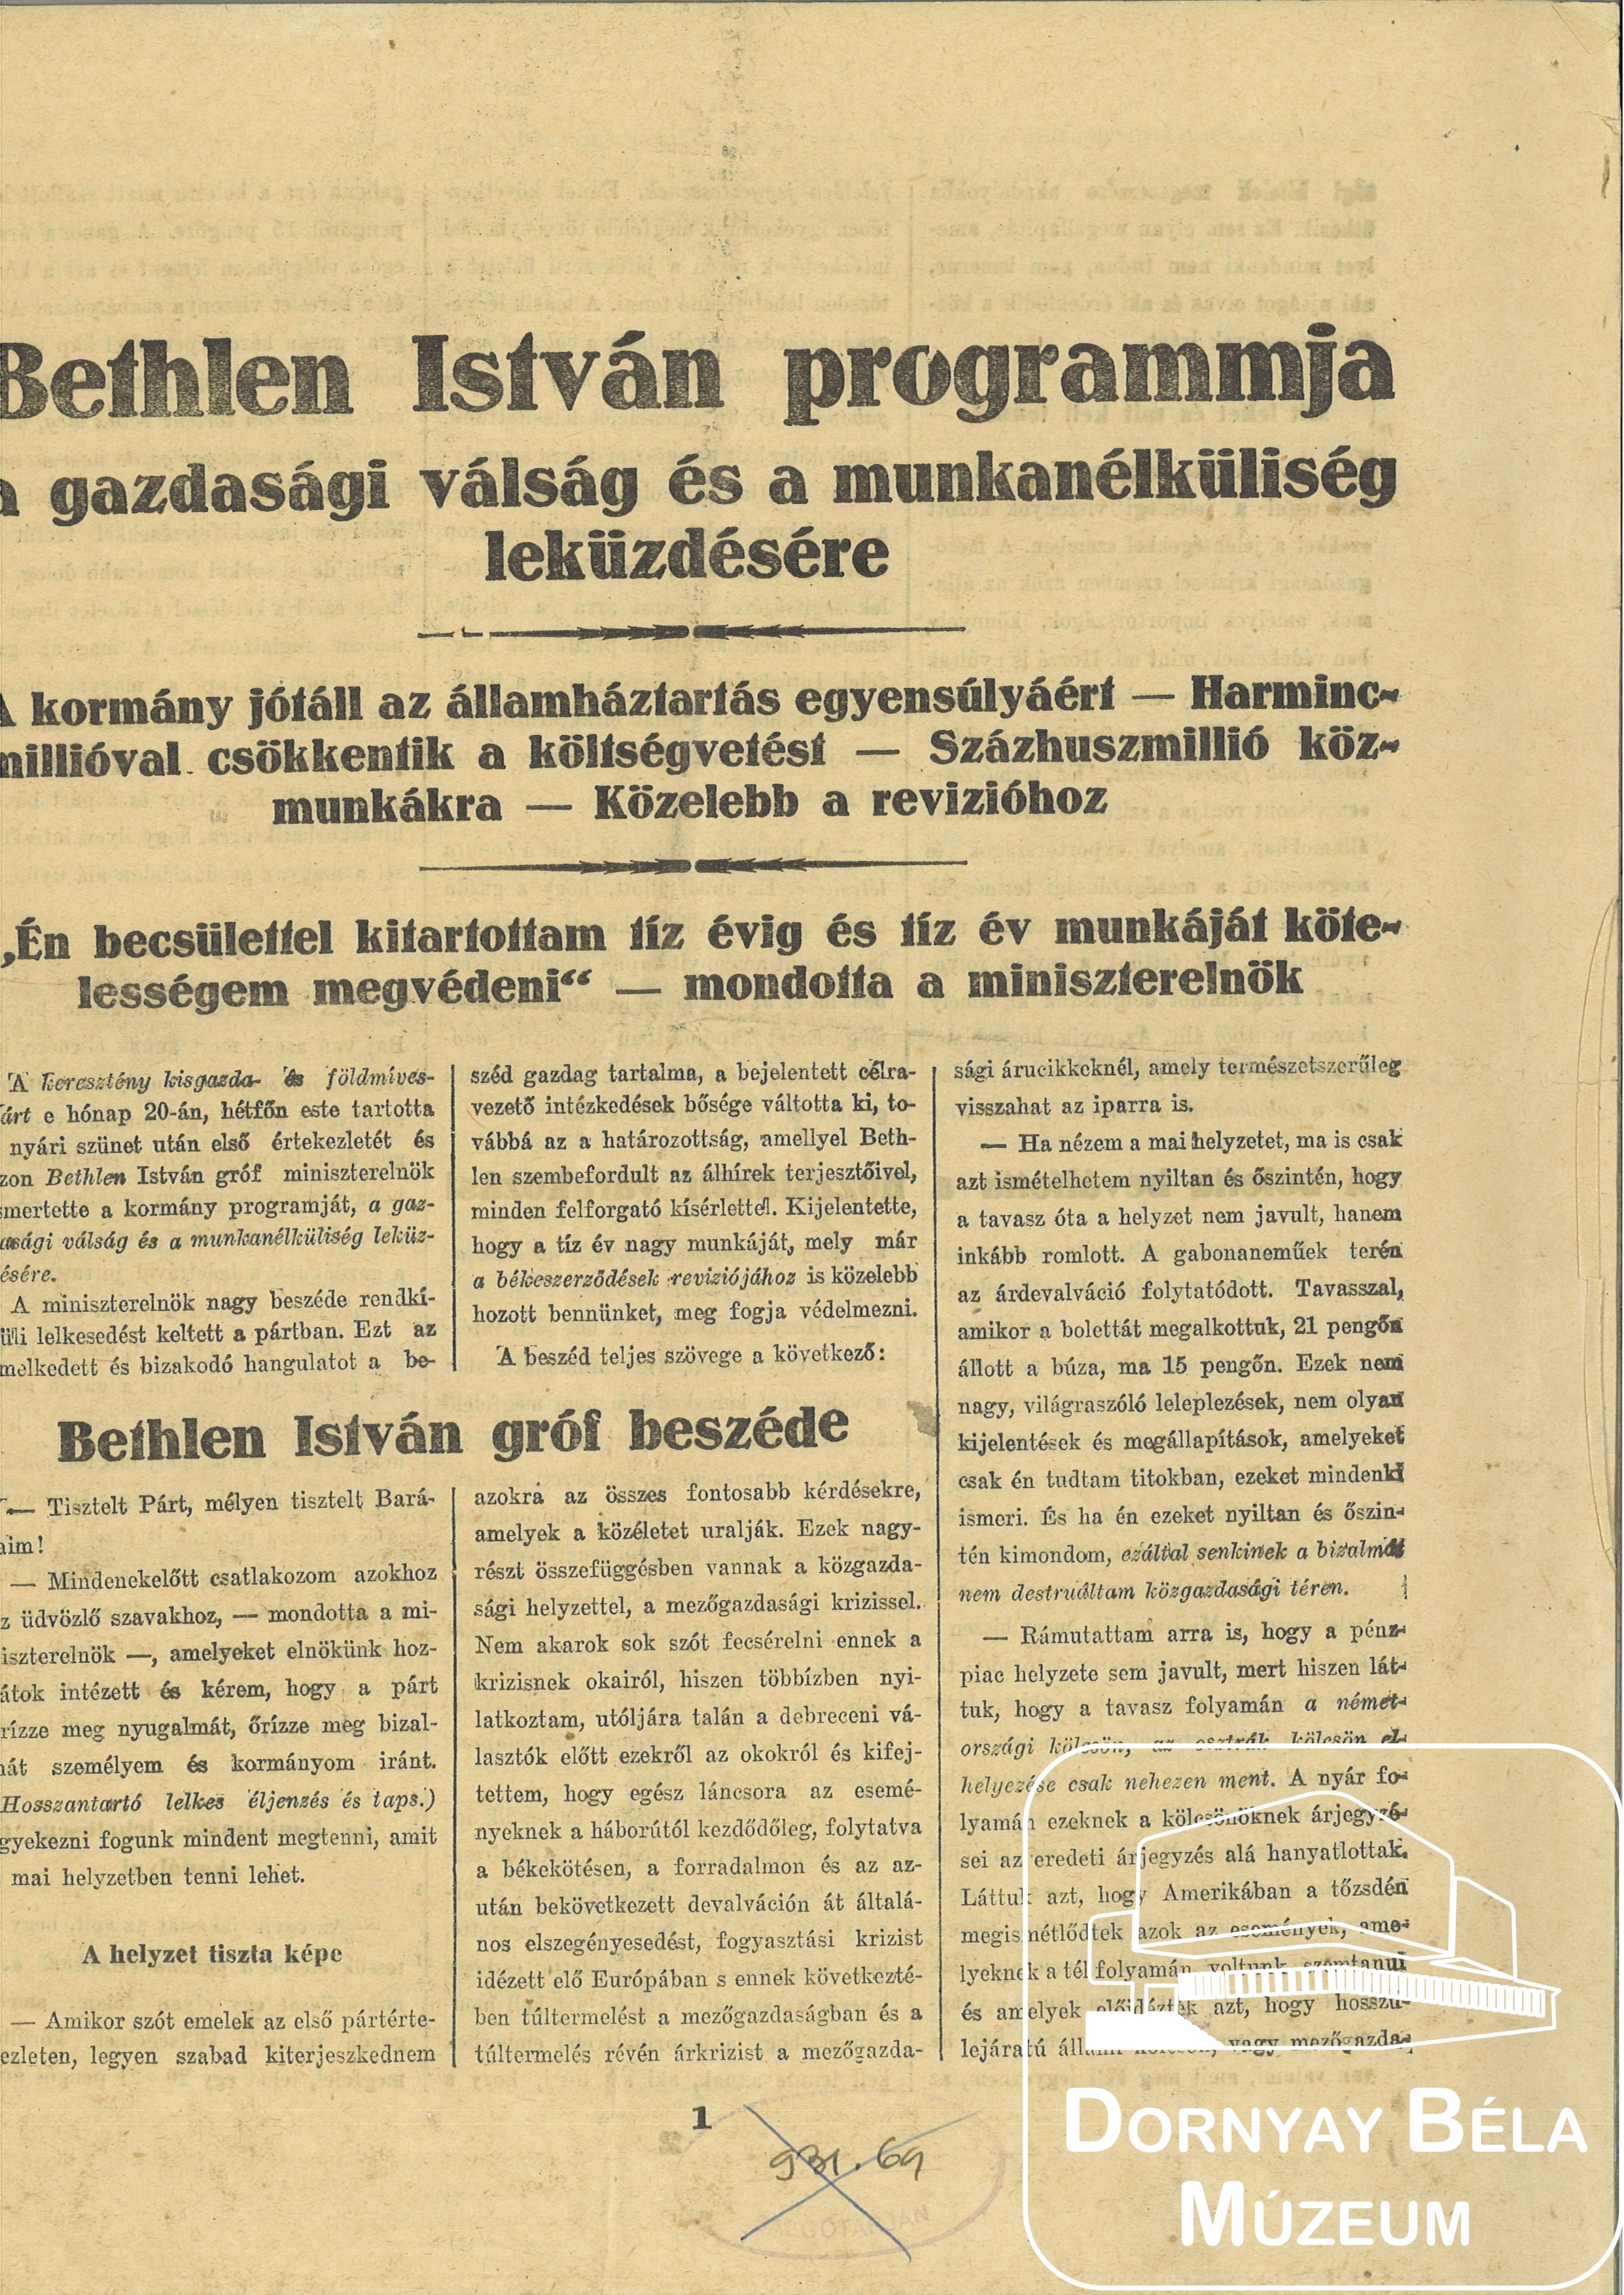 Bethlen István programja a gazdasági válság és a munkanélküliség leküzdésére. (Dornyay Béla Múzeum, Salgótarján CC BY-NC-SA)